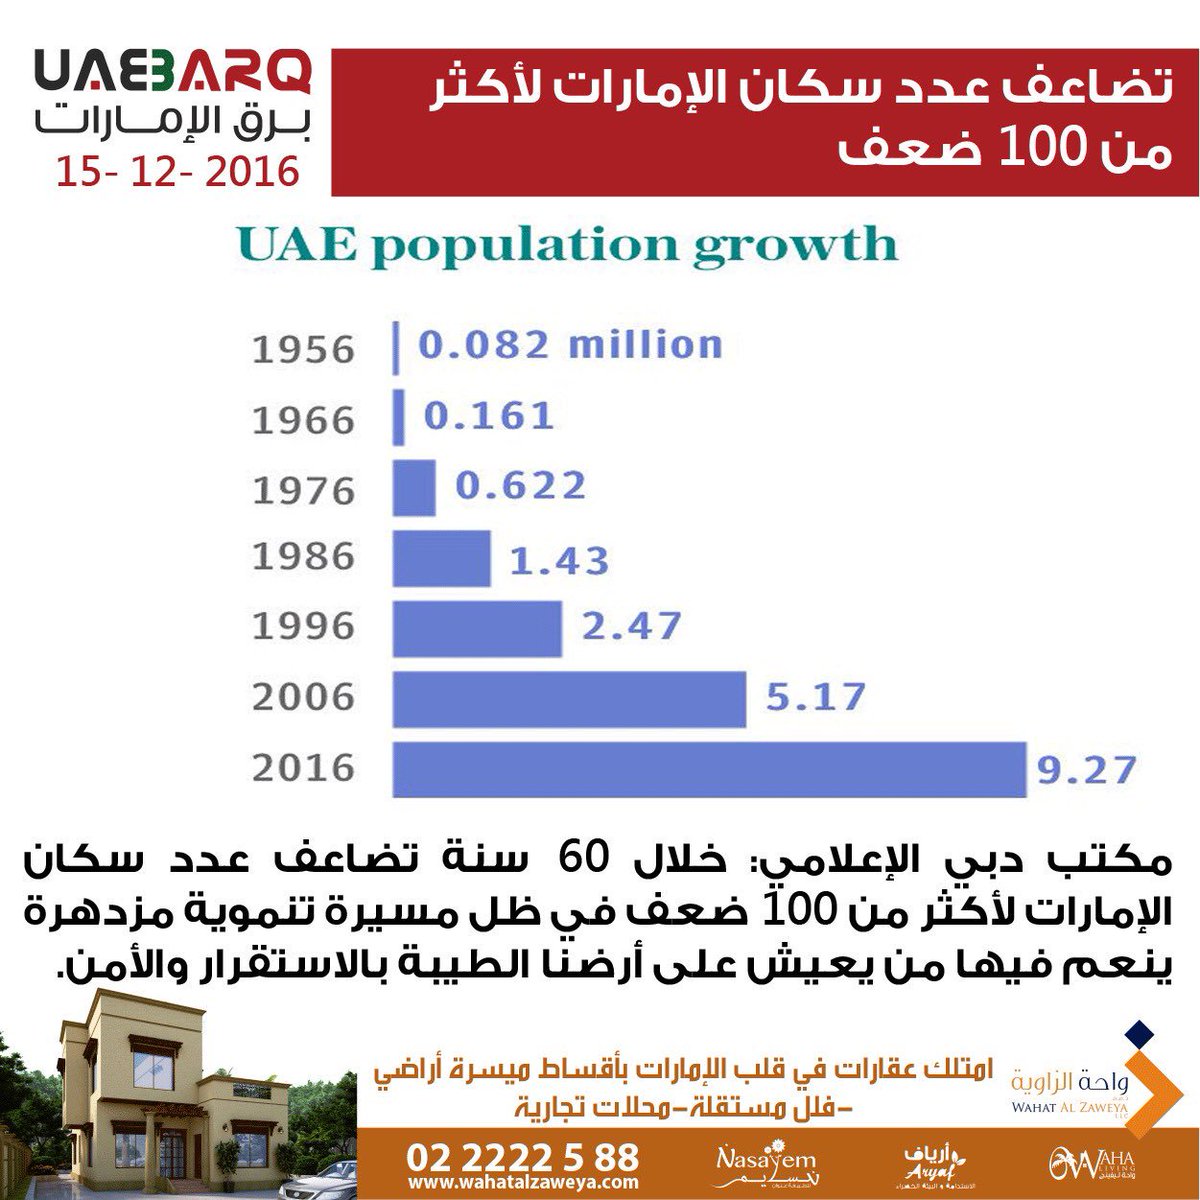 برق الإمارات على تويتر مكتب دبي الإعلامي تضاعف عدد سكان الإمارات لأكثر من 100 ضعف برق الإمارات